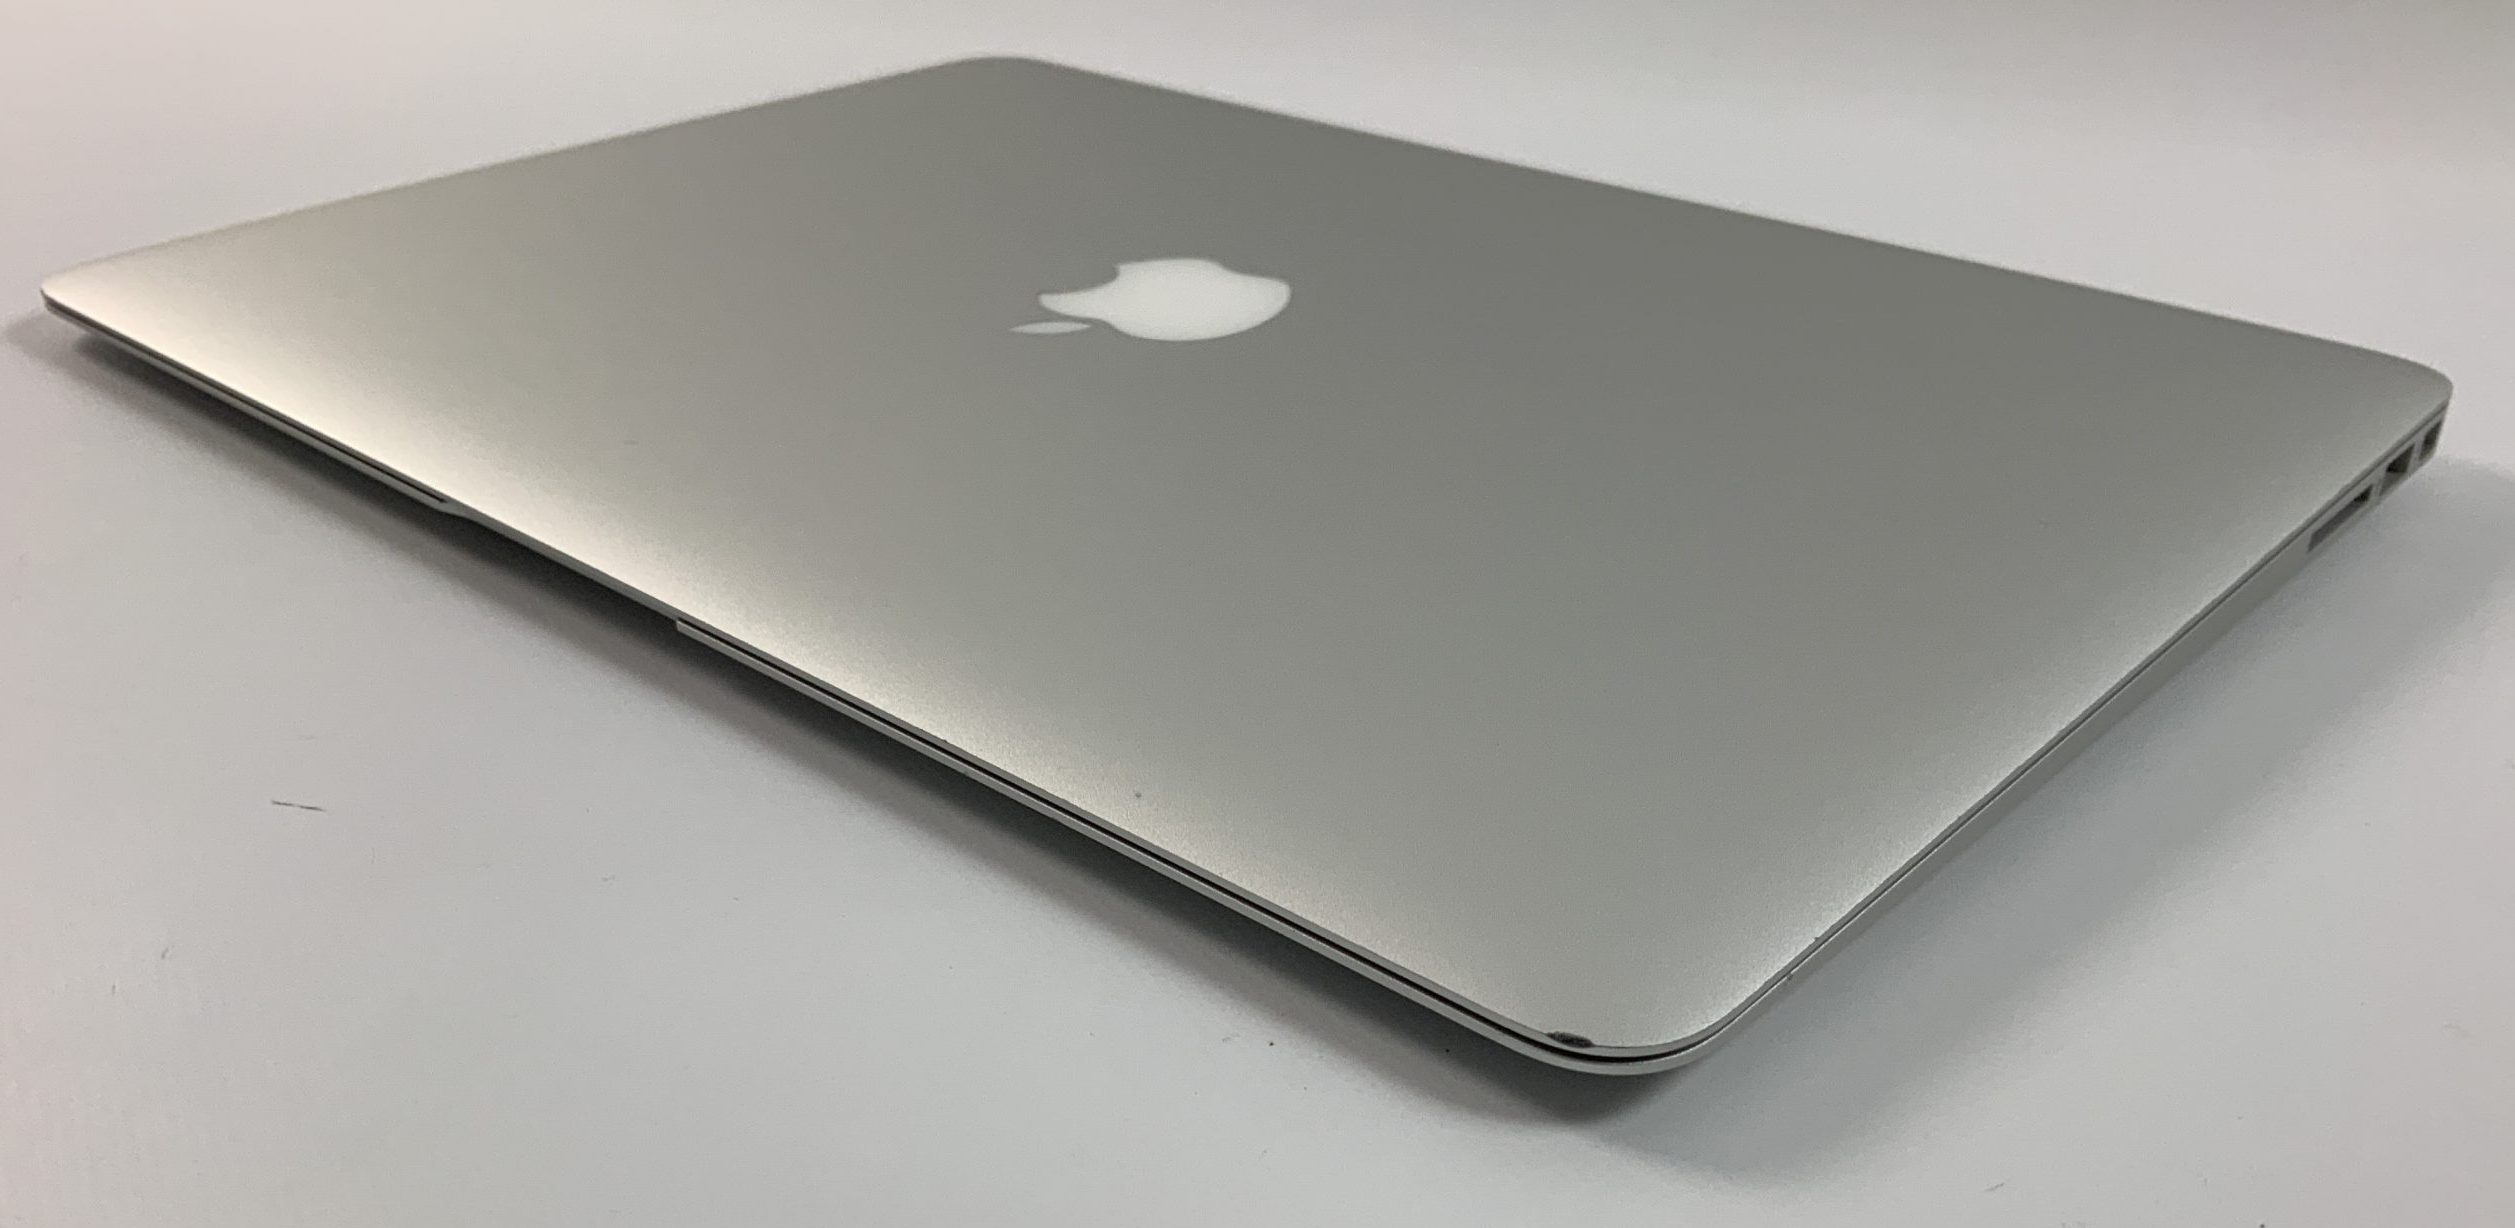 MacBook Air 13" Mid 2017 (Intel Core i5 1.8 GHz 8 GB RAM 256 GB SSD), Intel Core i5 1.8 GHz, 8 GB RAM, 256 GB SSD, Afbeelding 5